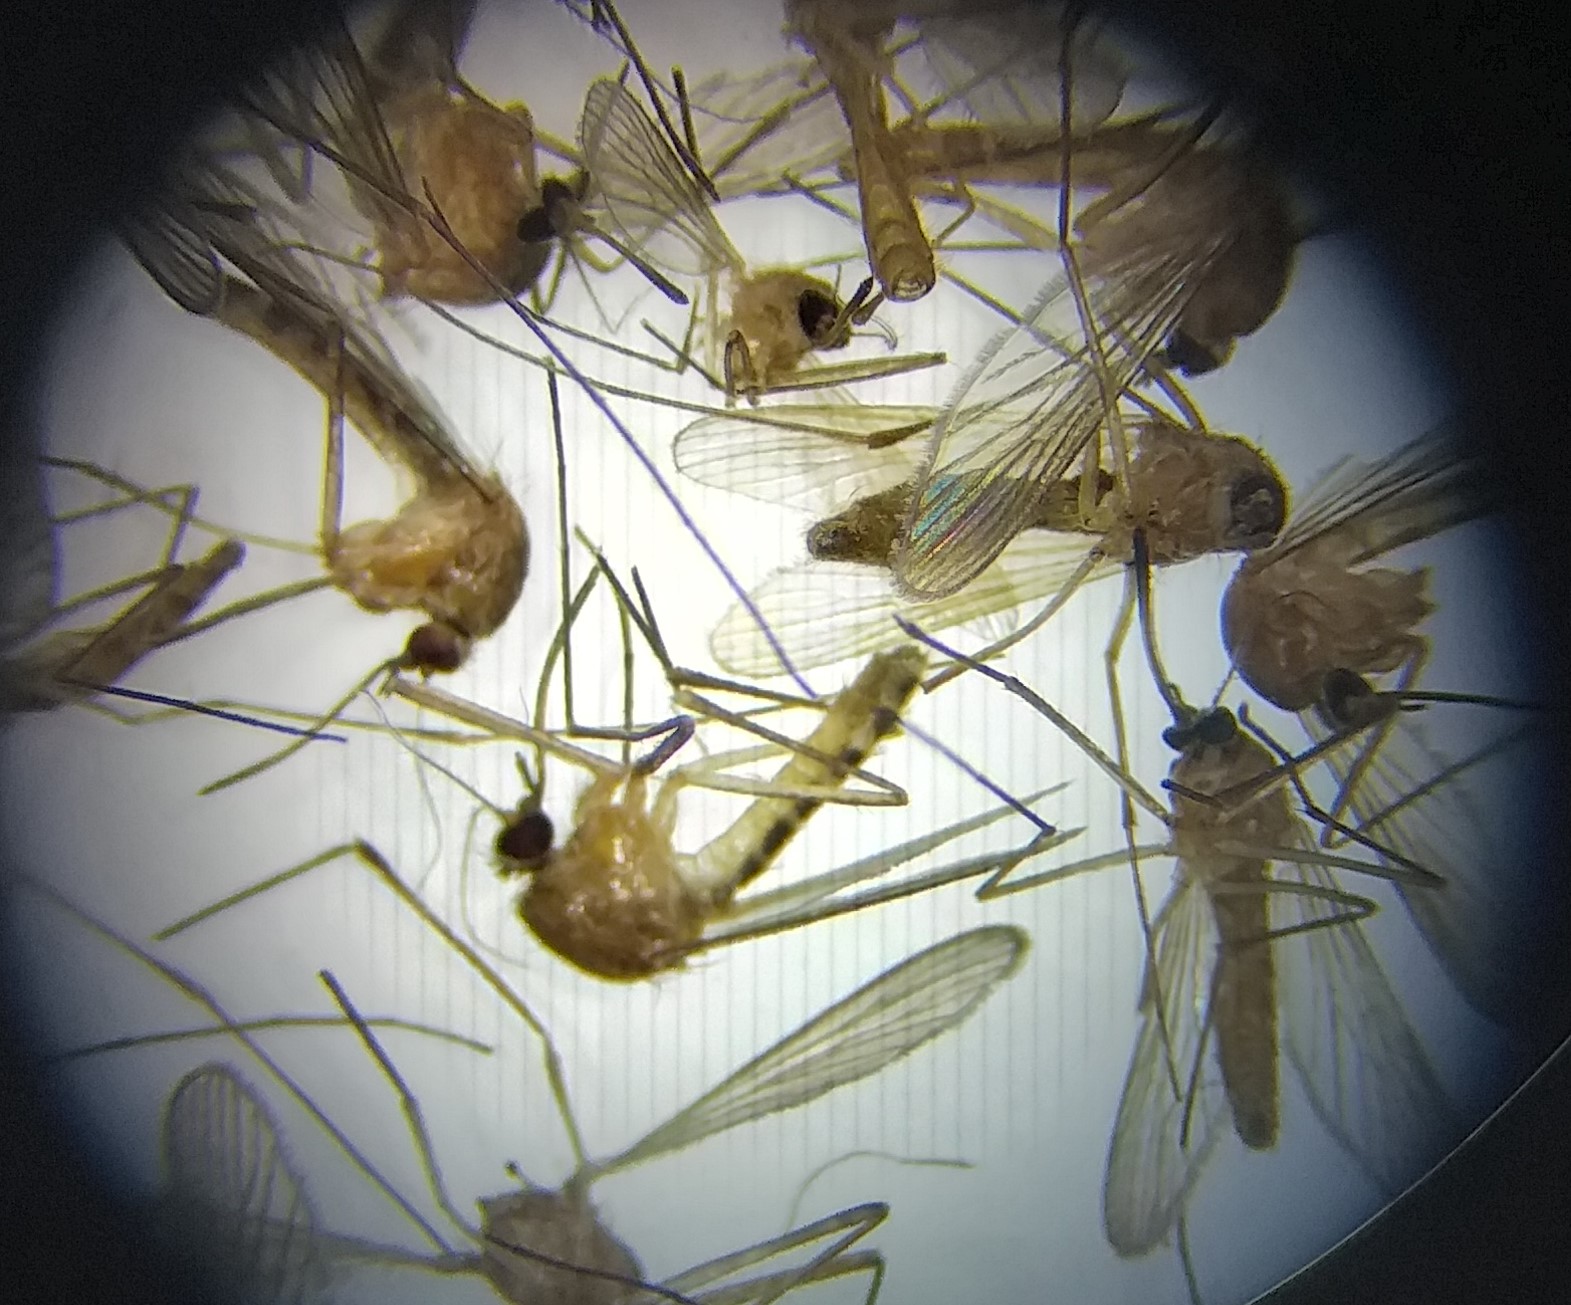 Ce trebuie să știm despre țânțari și virusul Denga